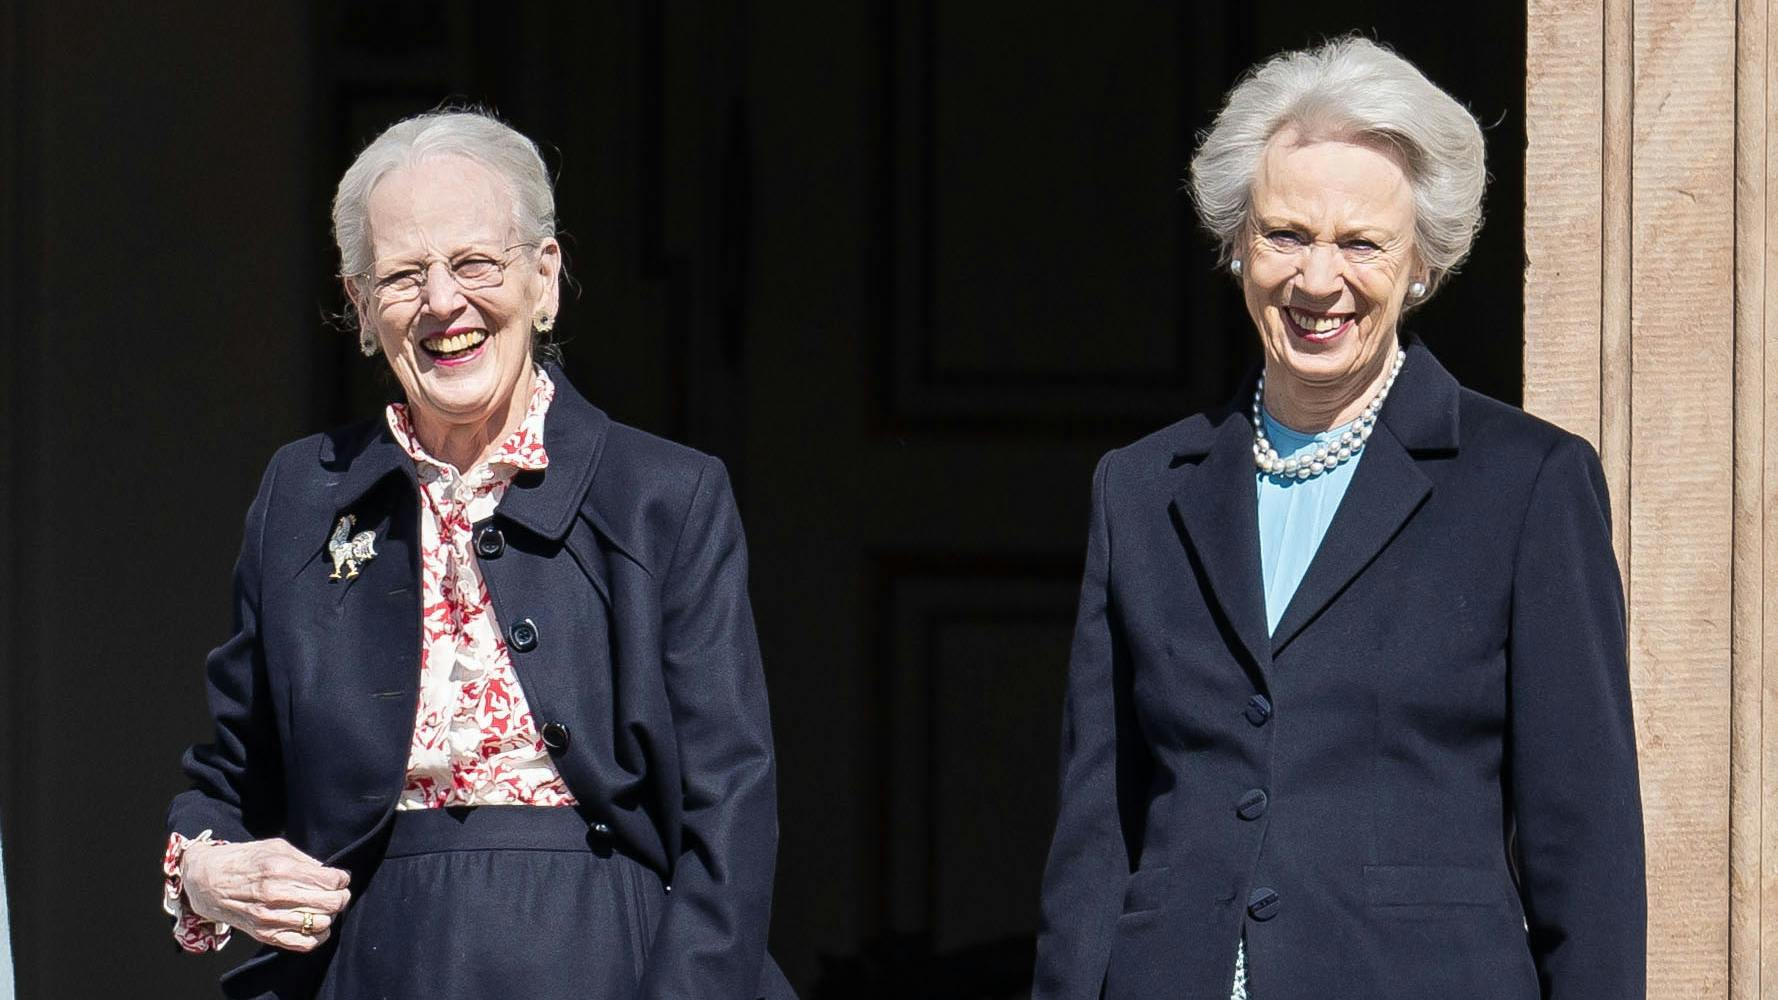 Her ses prinsesse Benedikte til dronning Margrethes 84-års fødselsdag den 16. april. Den 29. april fylder prinsesse Benedikte 80 år. 